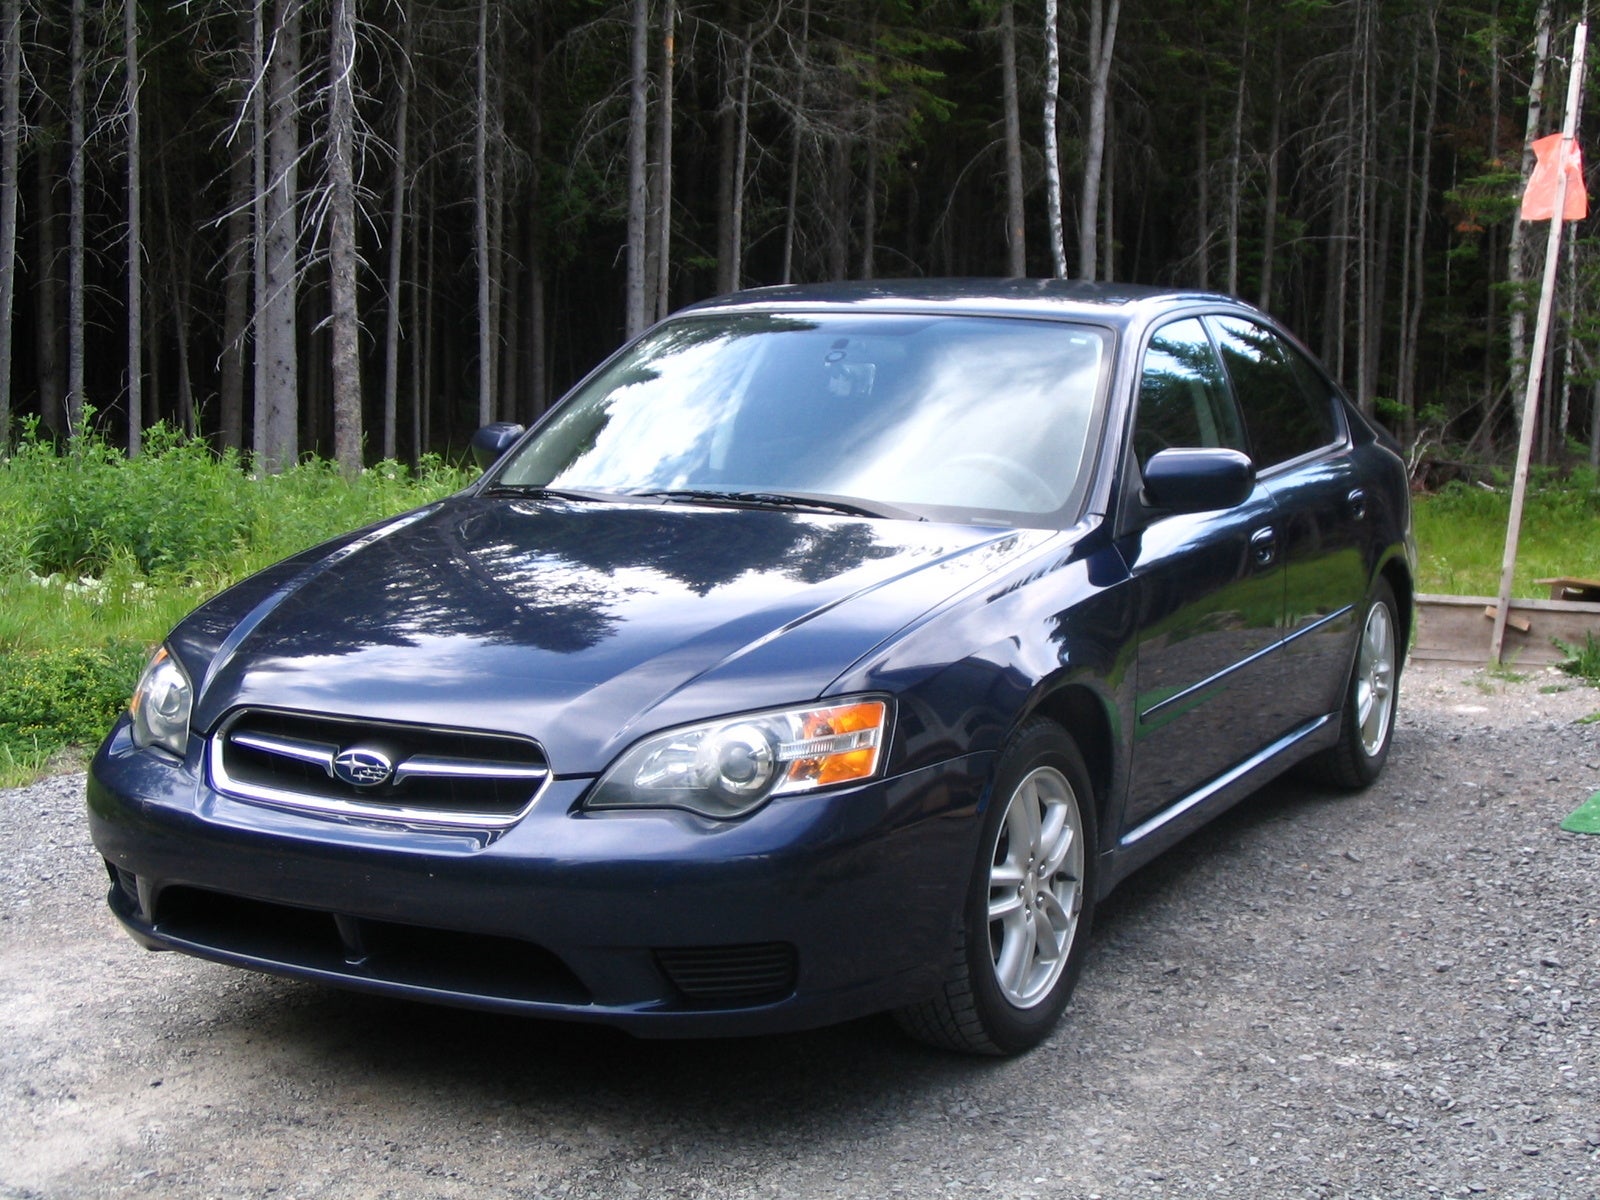 2005 Subaru Legacy Pictures CarGurus